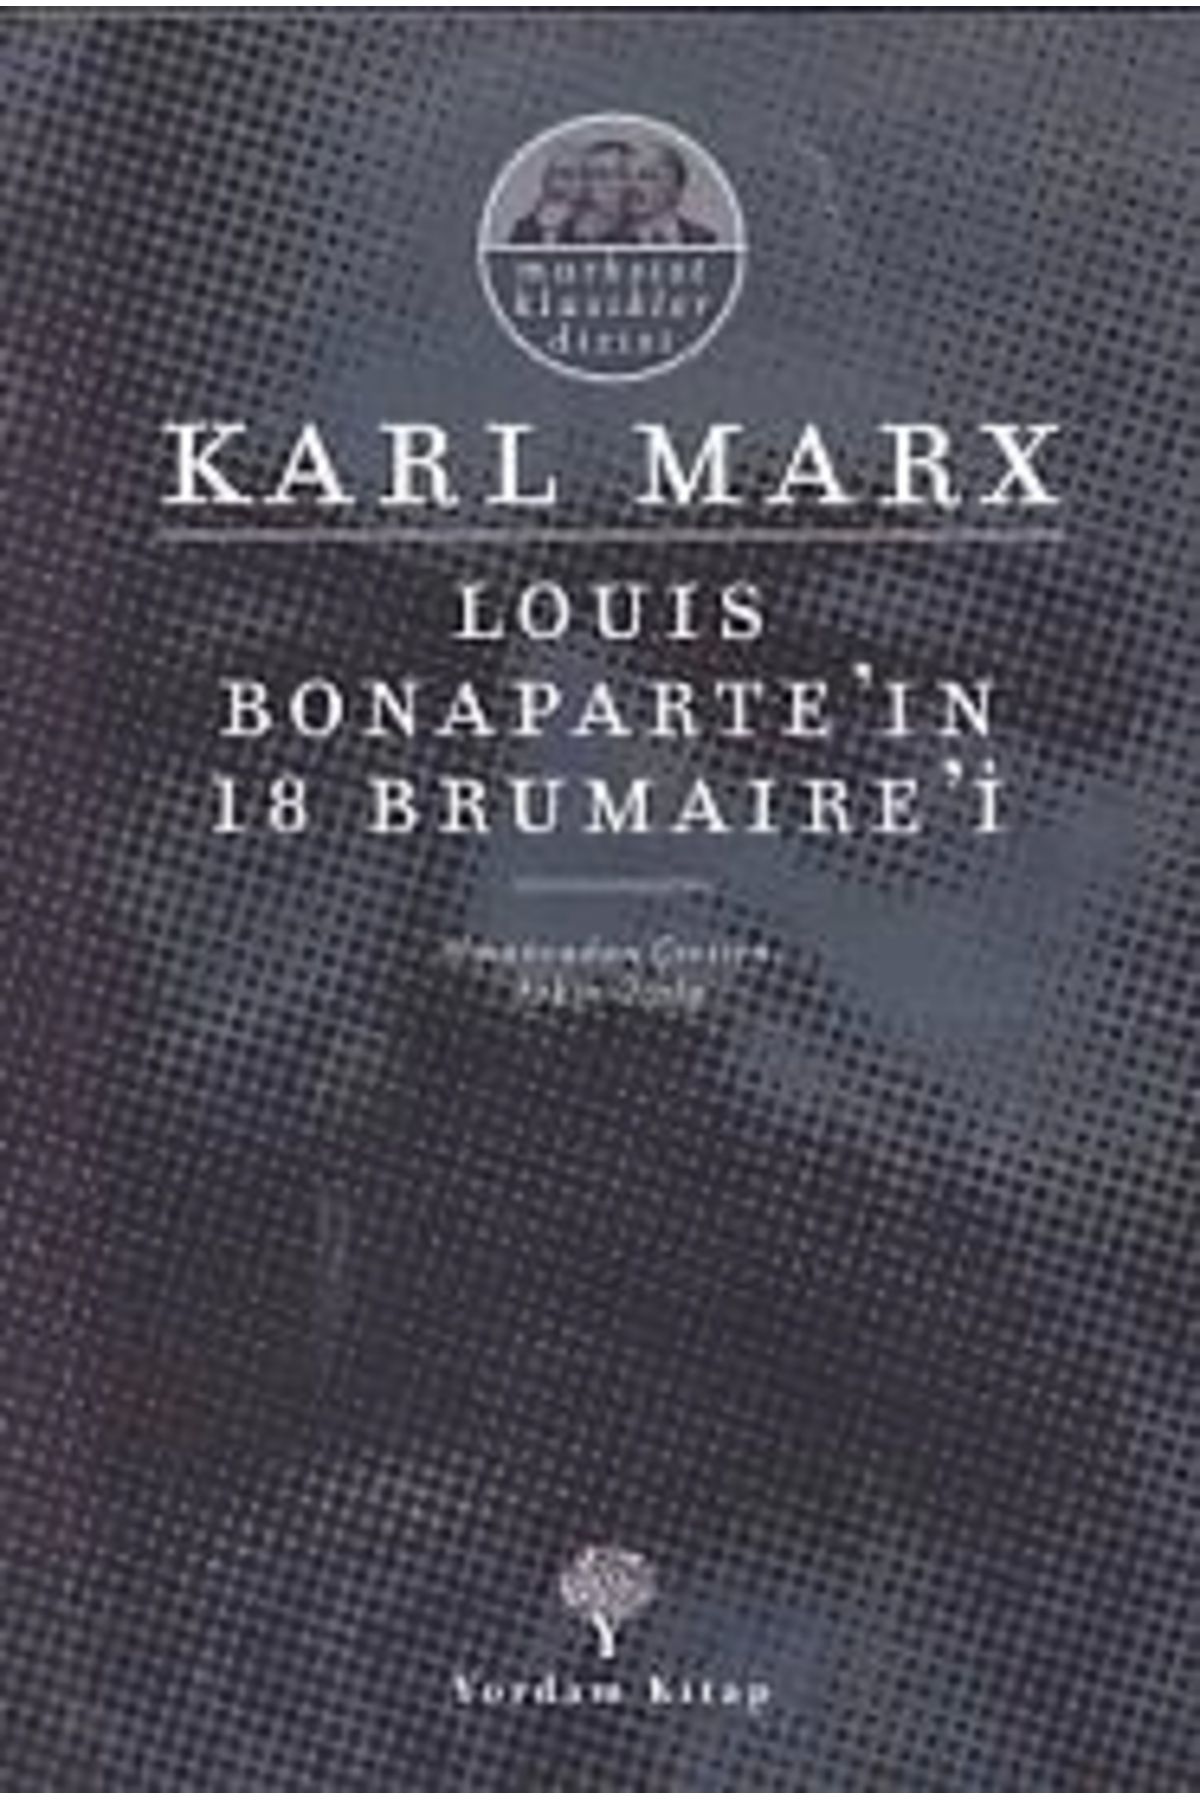 Yordam Kitap Louıs Bonaparte'ın 18 Brumaıre'i